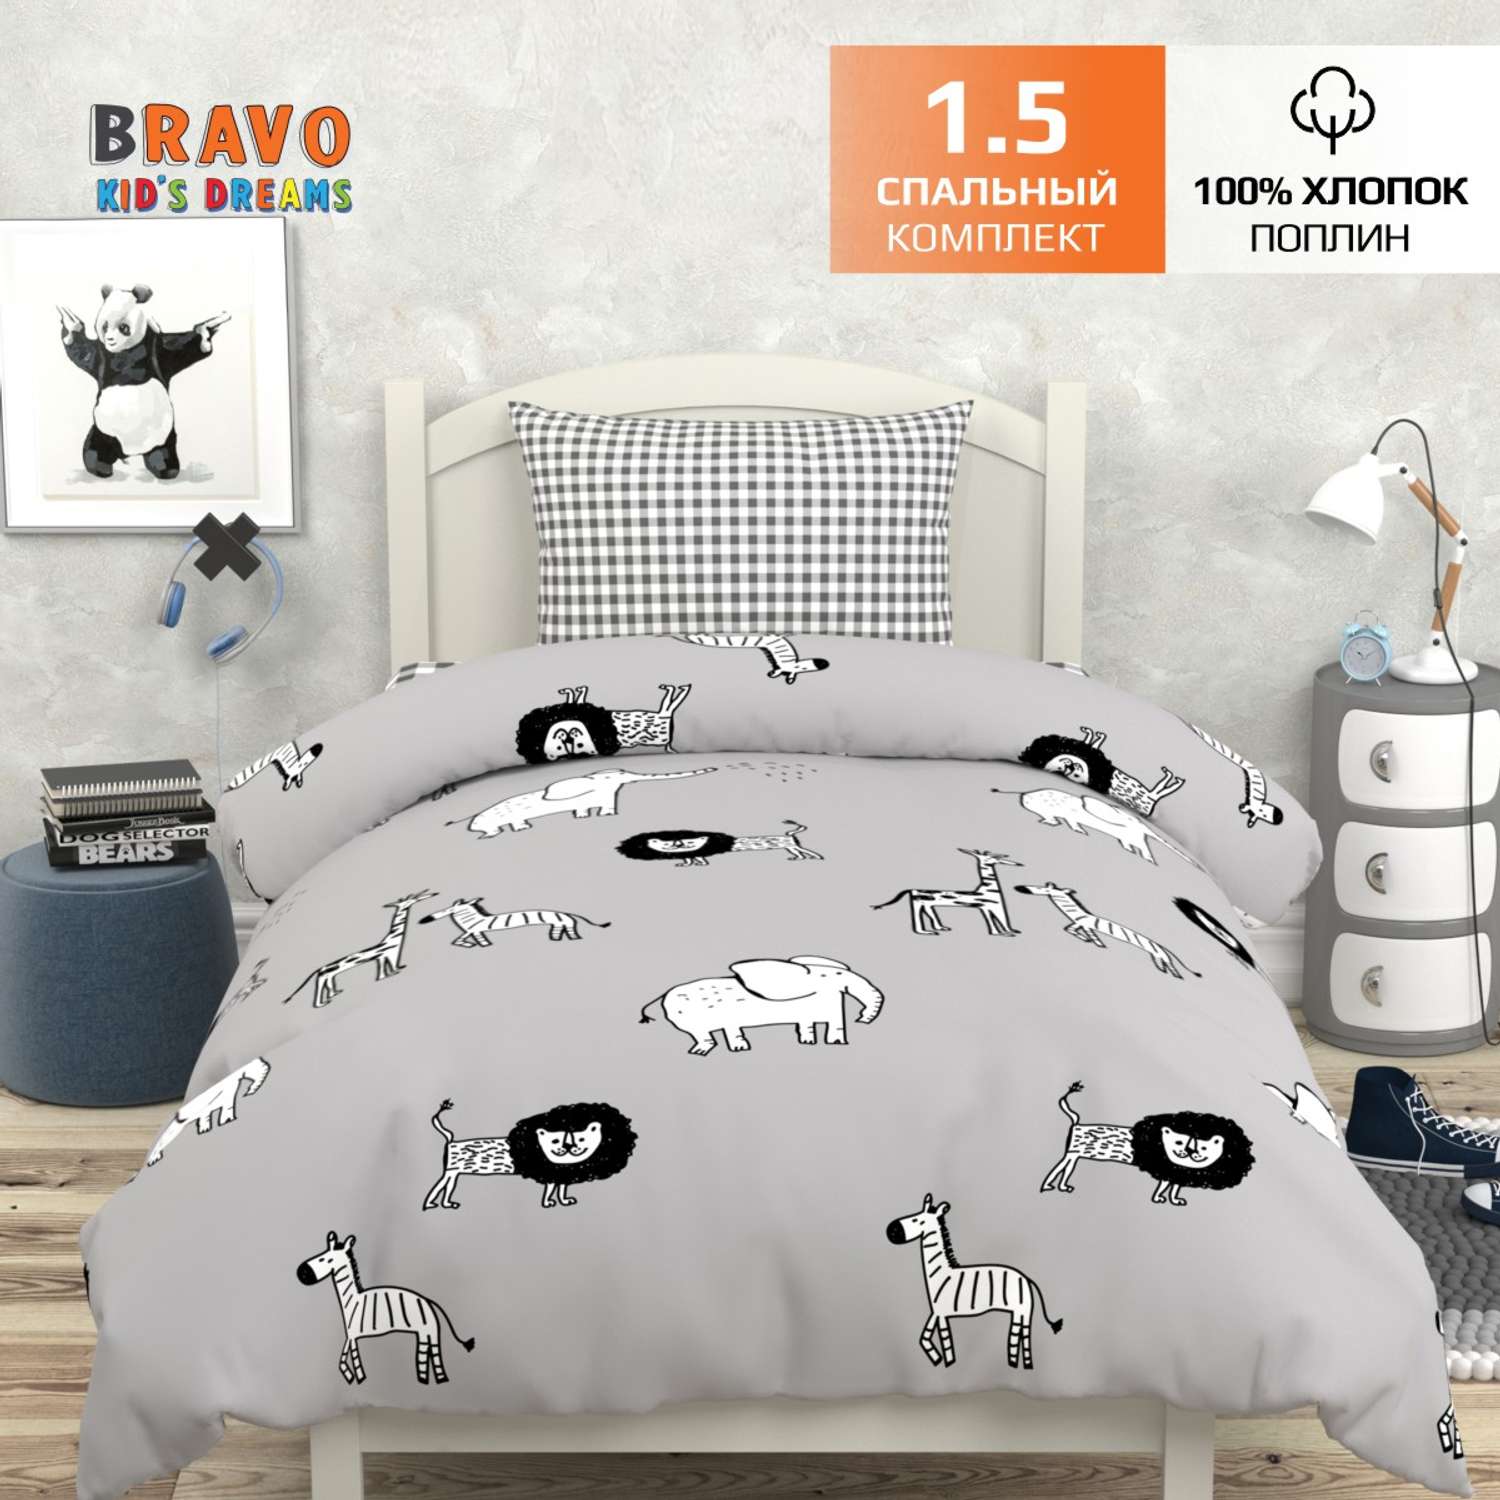 Комплект постельного белья BRAVO kids dreams Мадагаскар 1.5 спальный простыня на резинке 90х200 - фото 2